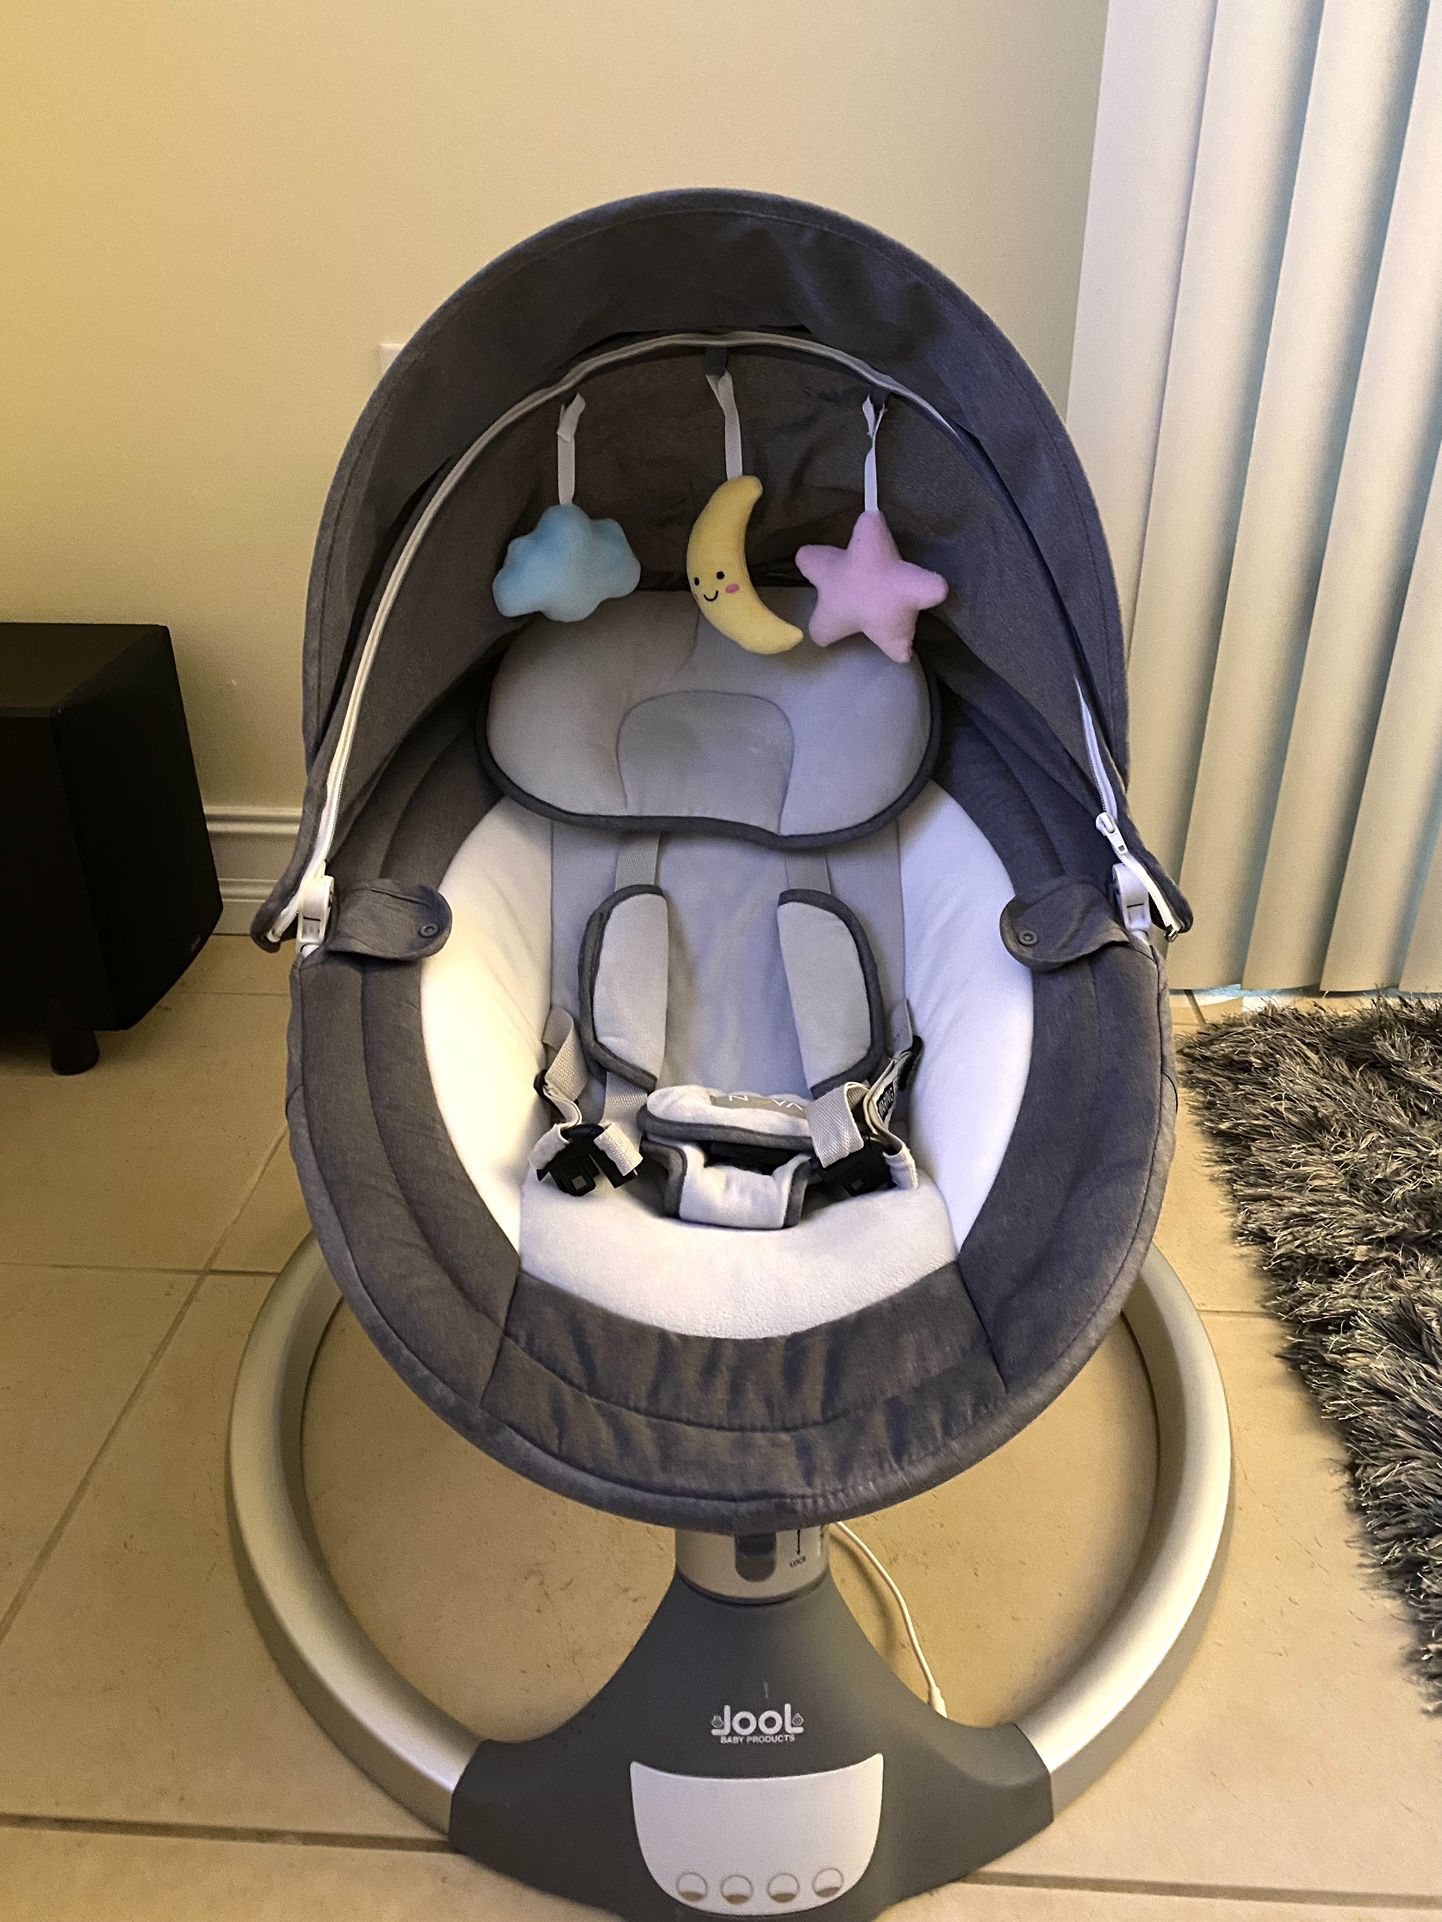 Jool Baby Nova Baby Swing for Infants - Motorized Bluetooth Swing, Music Speaker Jool Baby